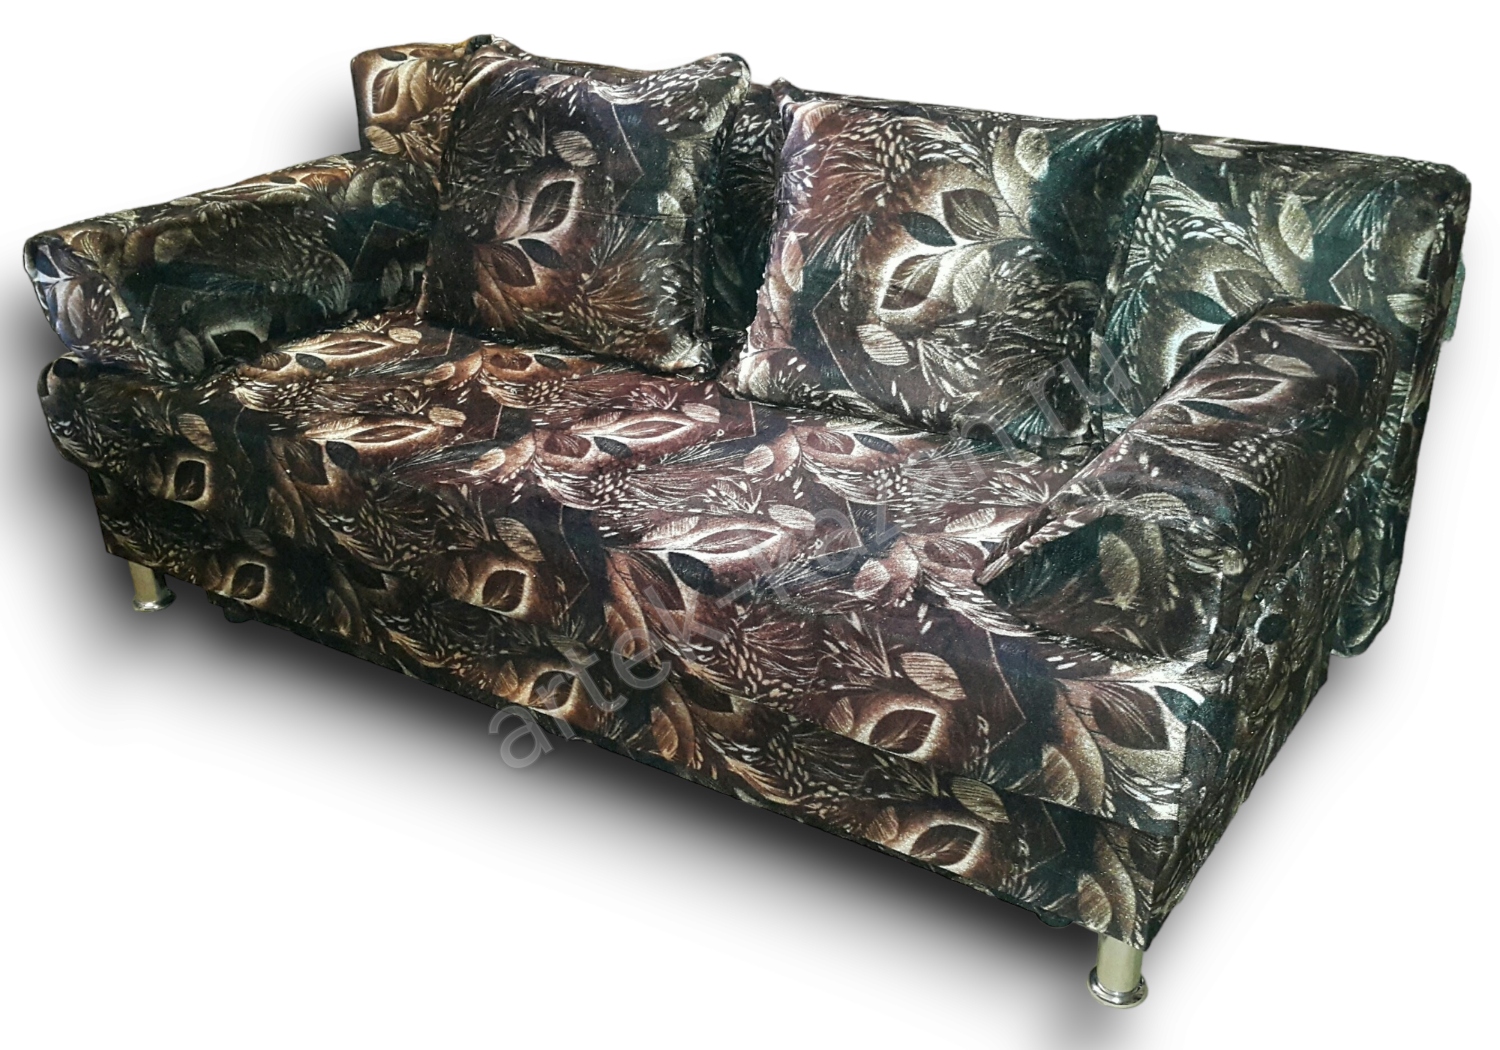 диван еврокнижка Эконом фото № 1. Купить недорогой диван по низкой цене от производителя можно у нас.